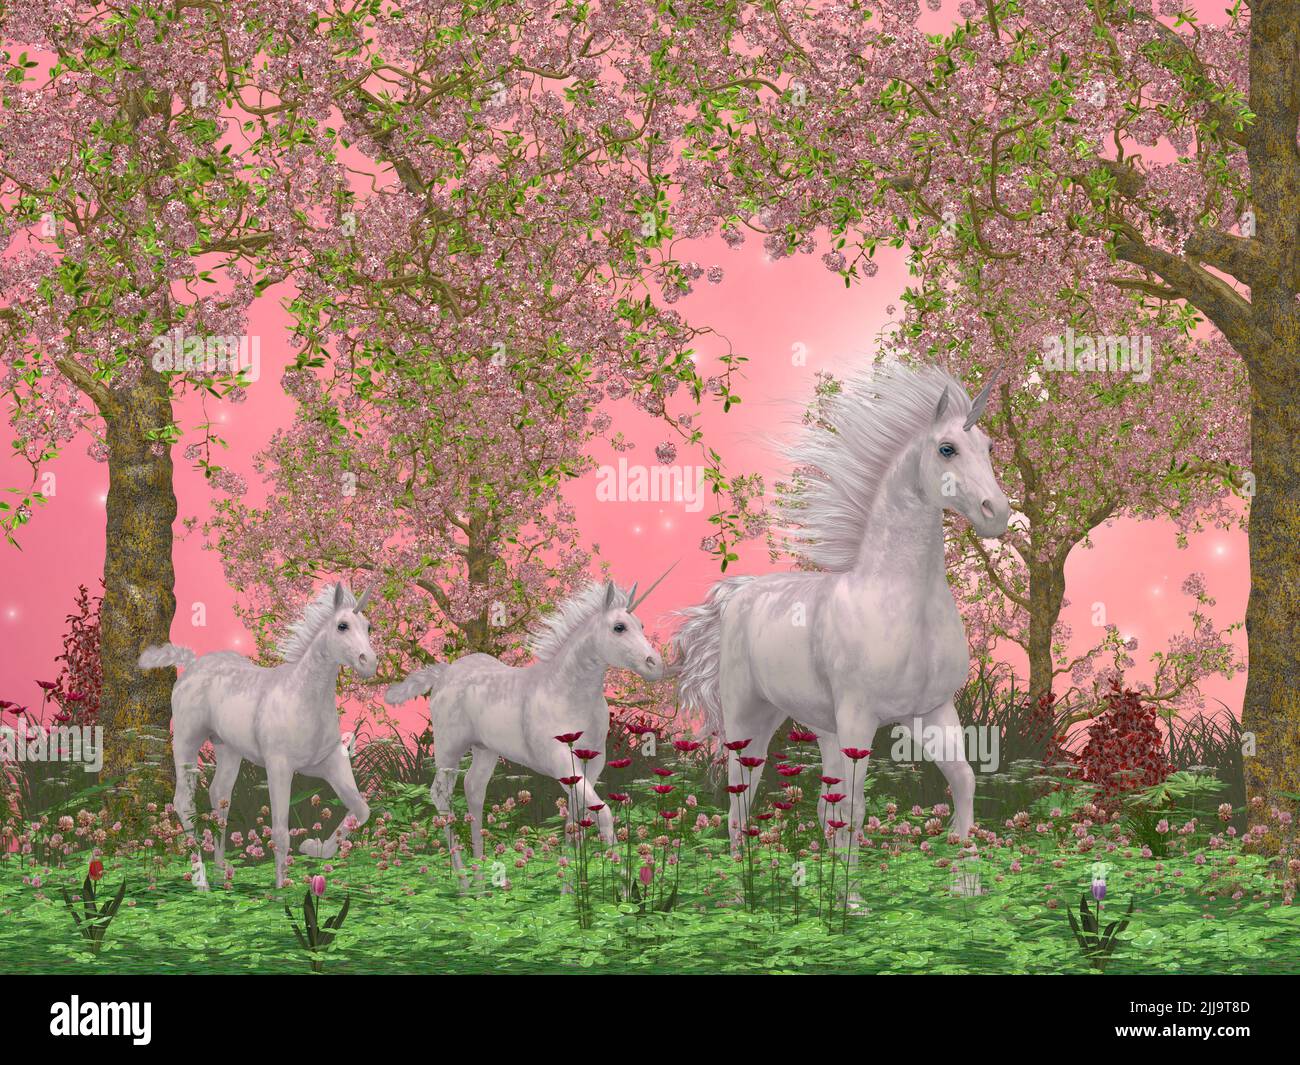 Une mère de licorne blanche mène ses deux poulains dans une forêt magique pleine de fleurs et de magnifiques cerisiers en fleurs. Banque D'Images